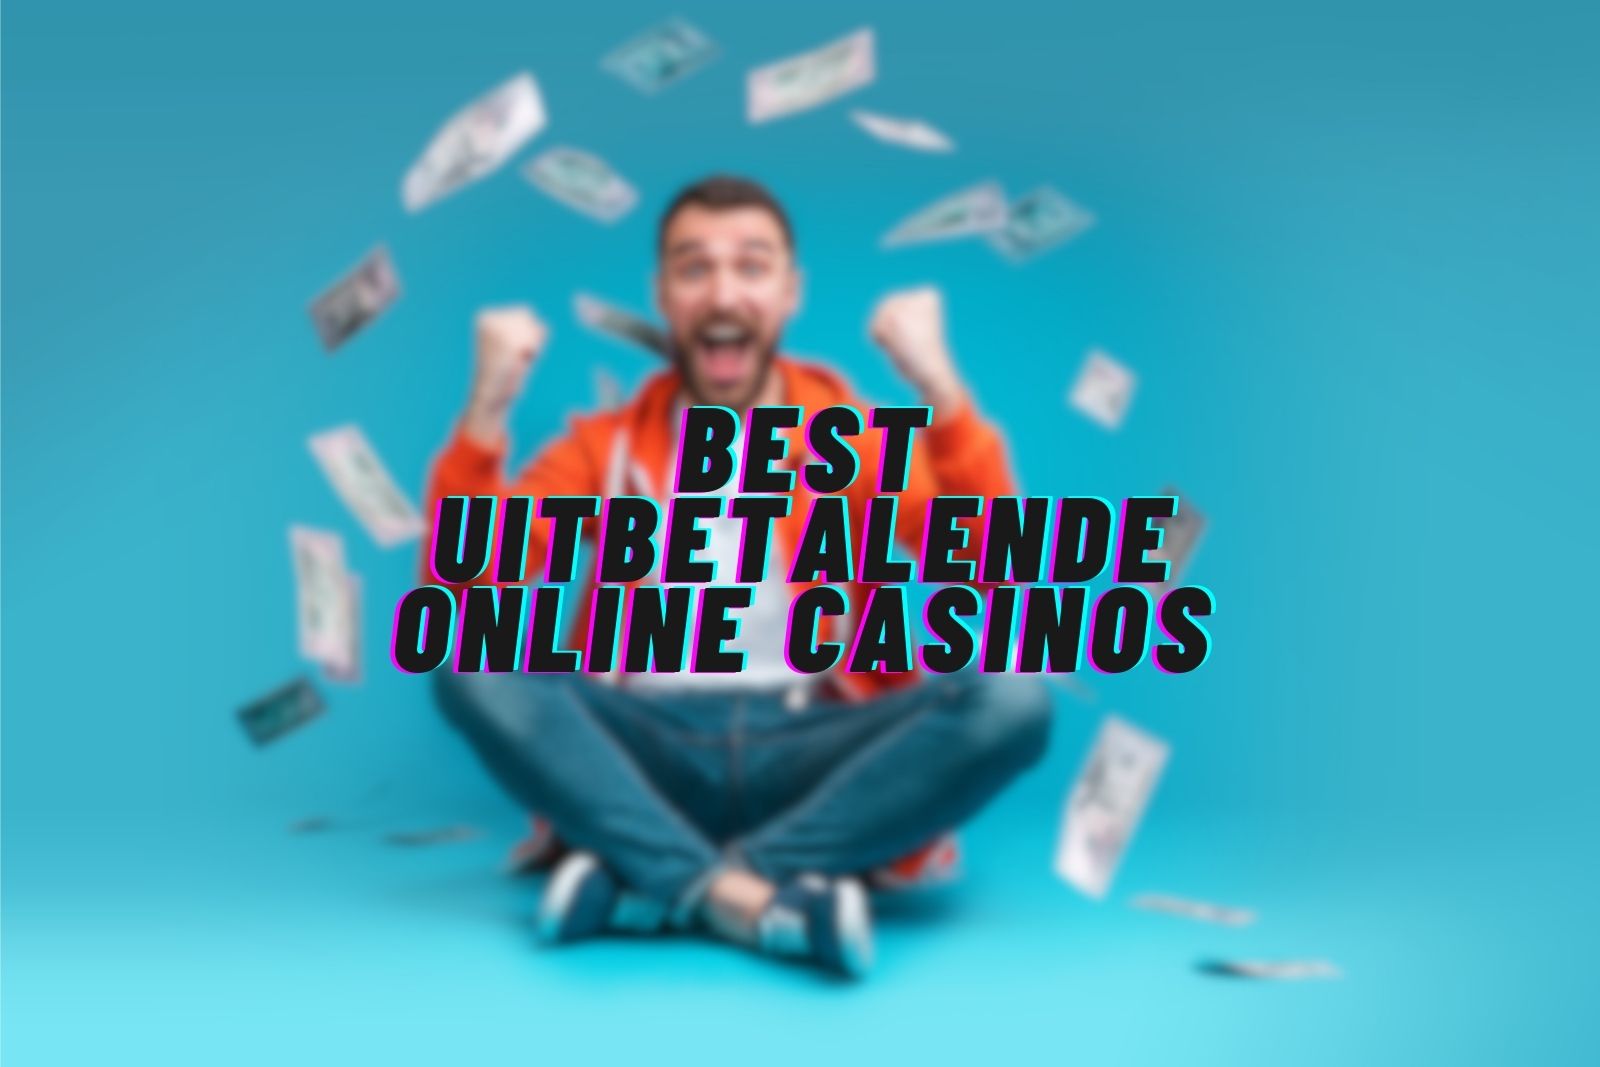 Best uitbetalende Online Casinos